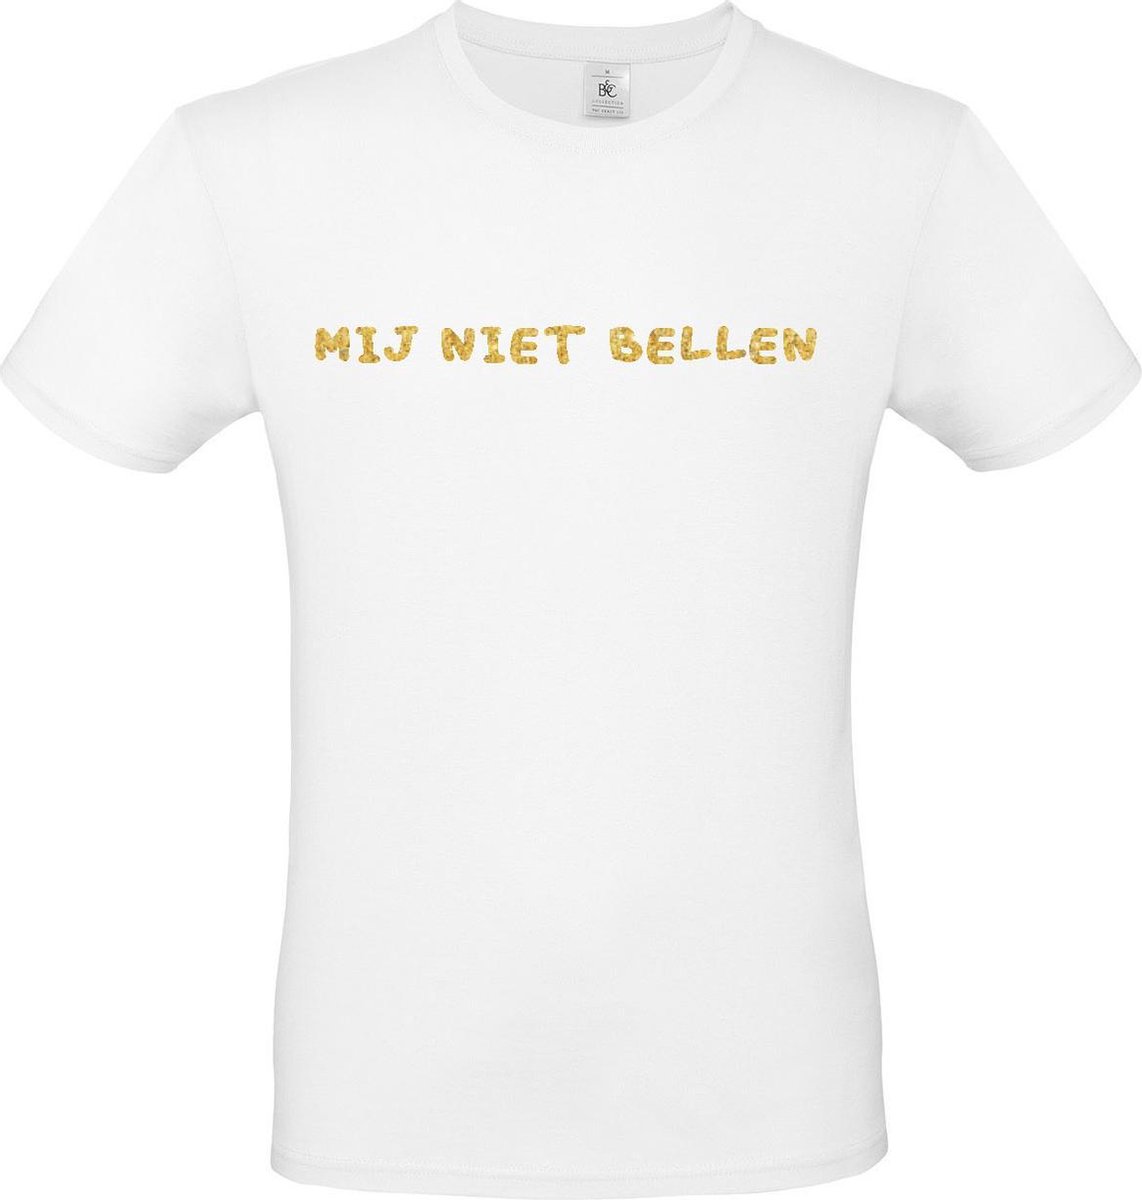 T-shirt met opdruk “Mij niet bellen”, Wit T-shirt met goudkleurige opdruk